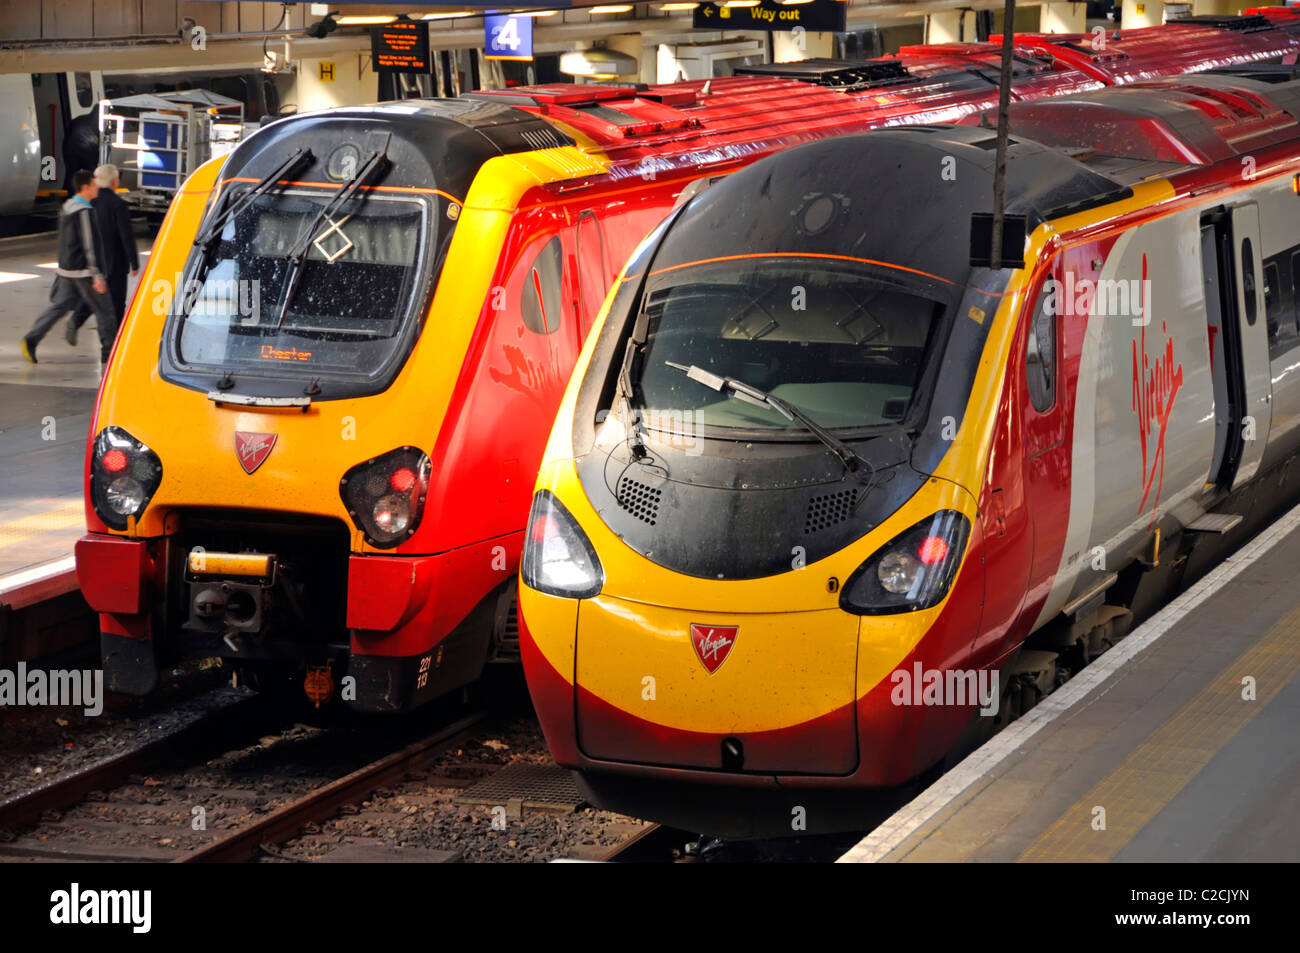 Due treni express Virgin snelliti presso le piattaforme della stazione ferroviaria Euston Terminus che forniscono servizi di trasporto pubblico interurbano a Londra, Inghilterra, Regno Unito Foto Stock